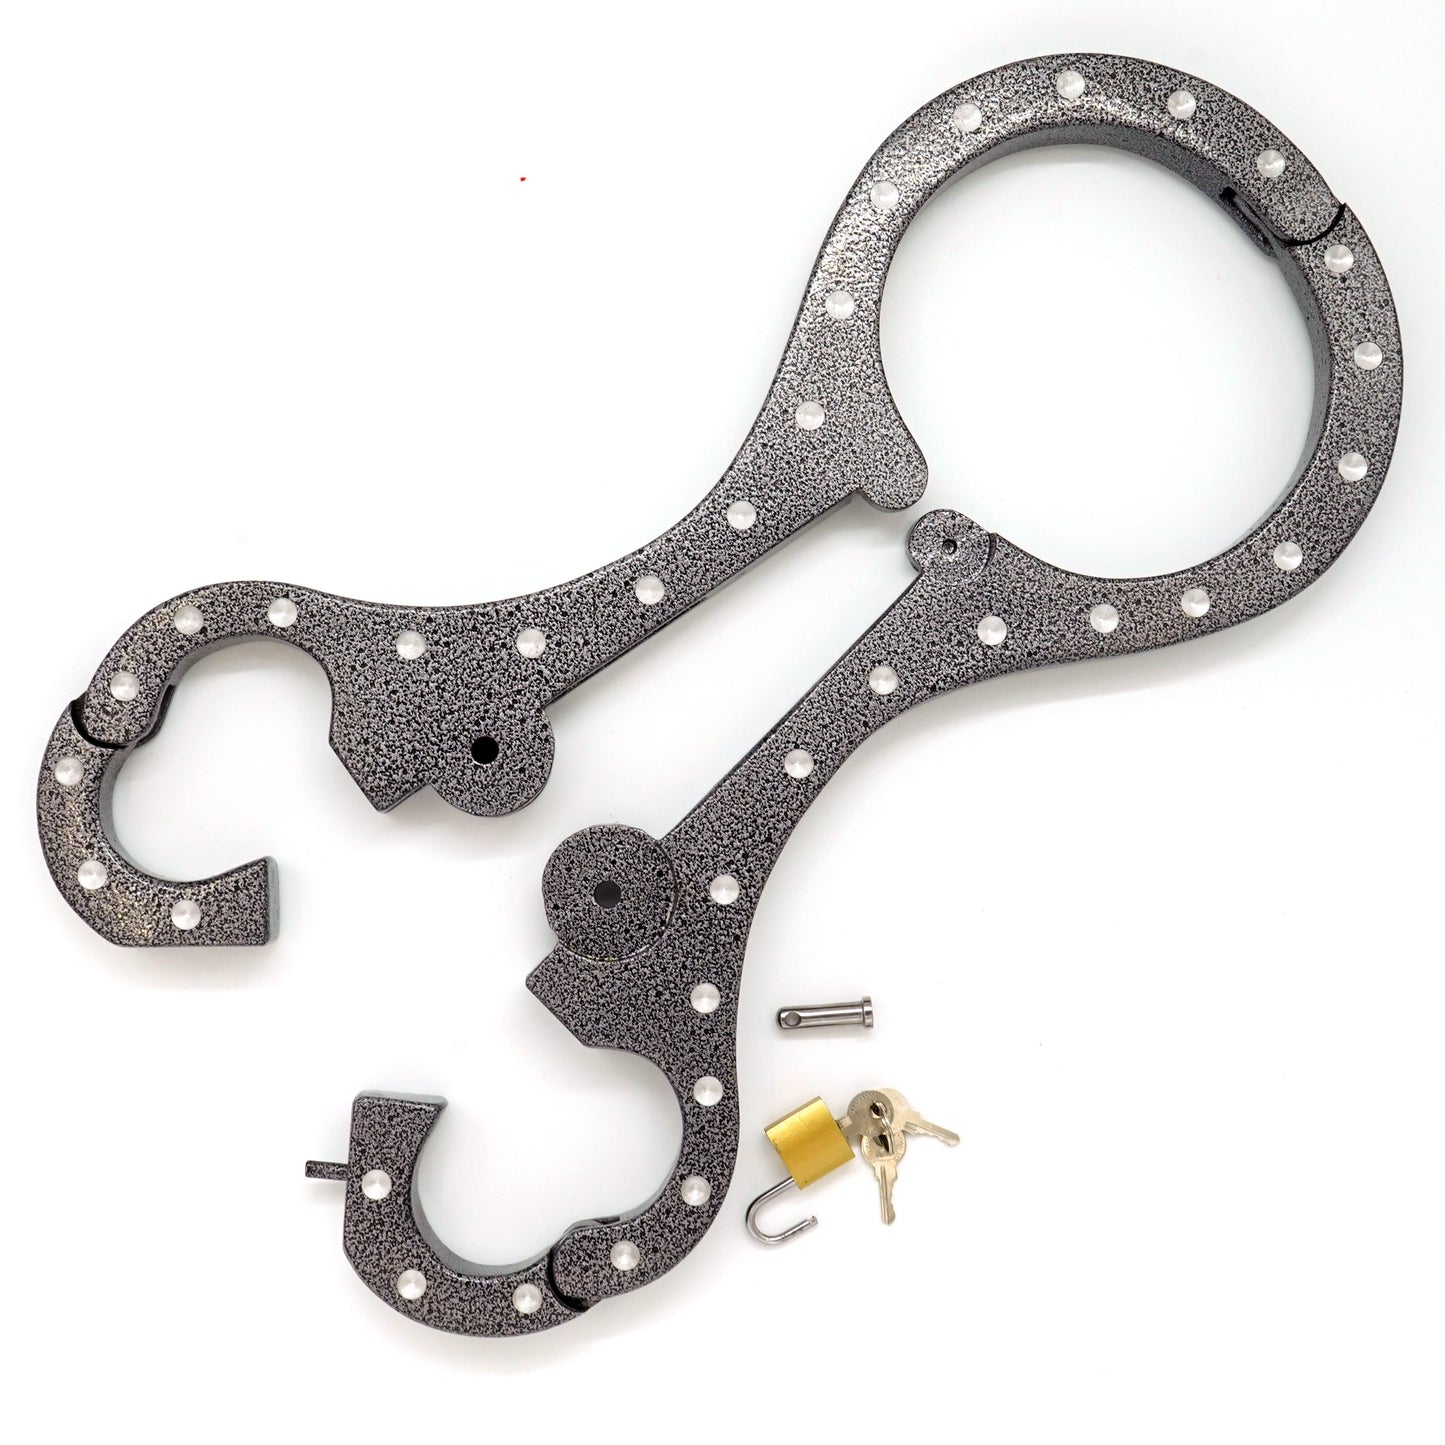 Aluminum bondage shrew´s fiddle yoke for neck and hands